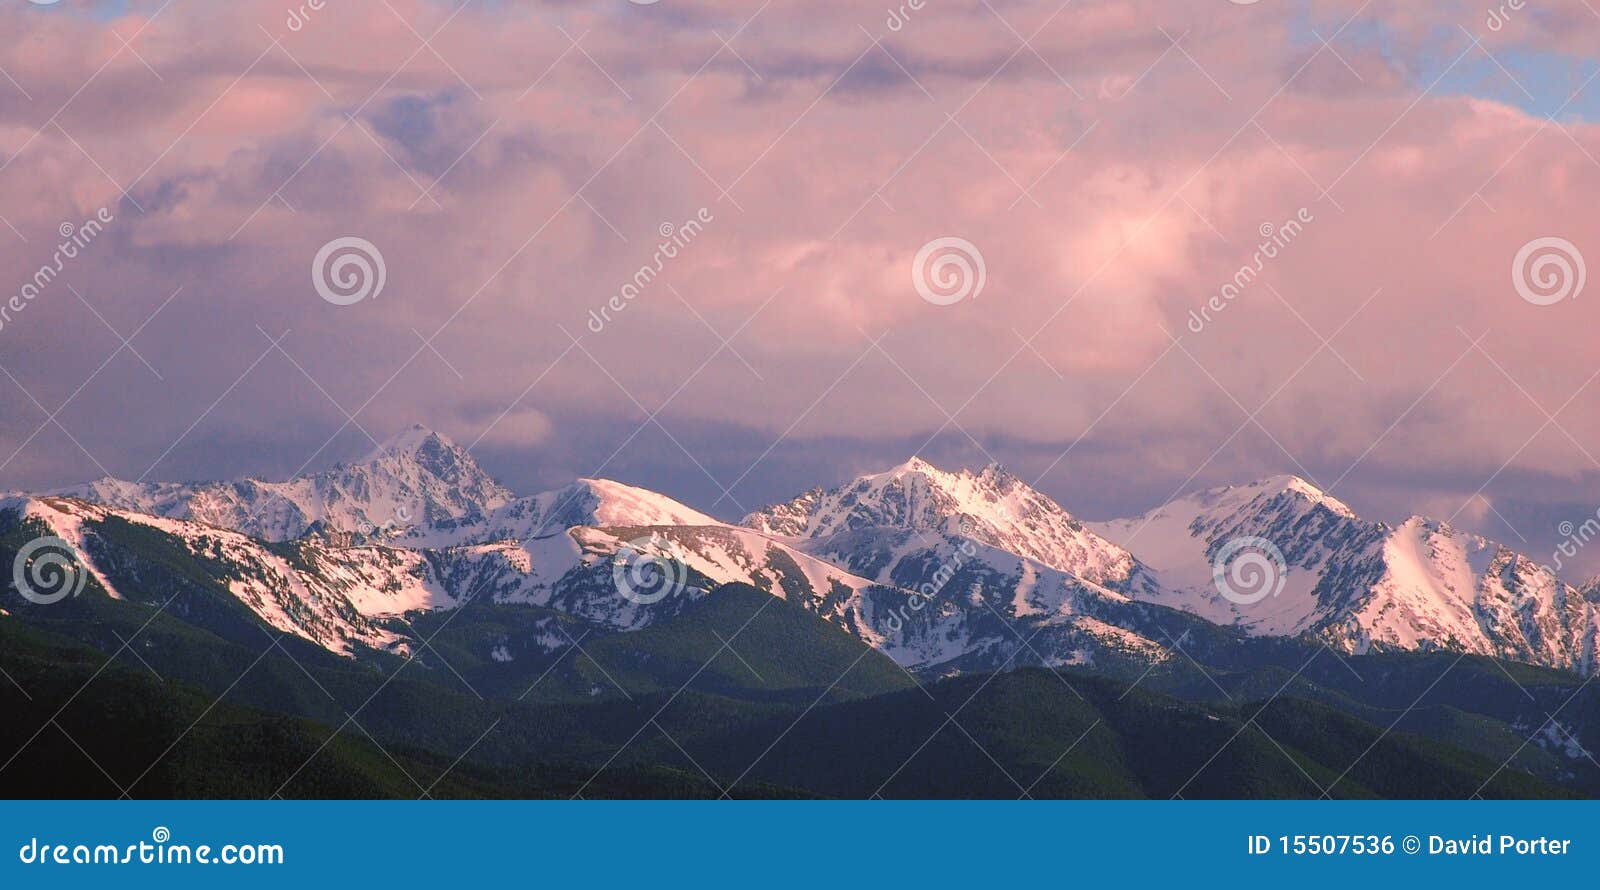 montana mountain peaks